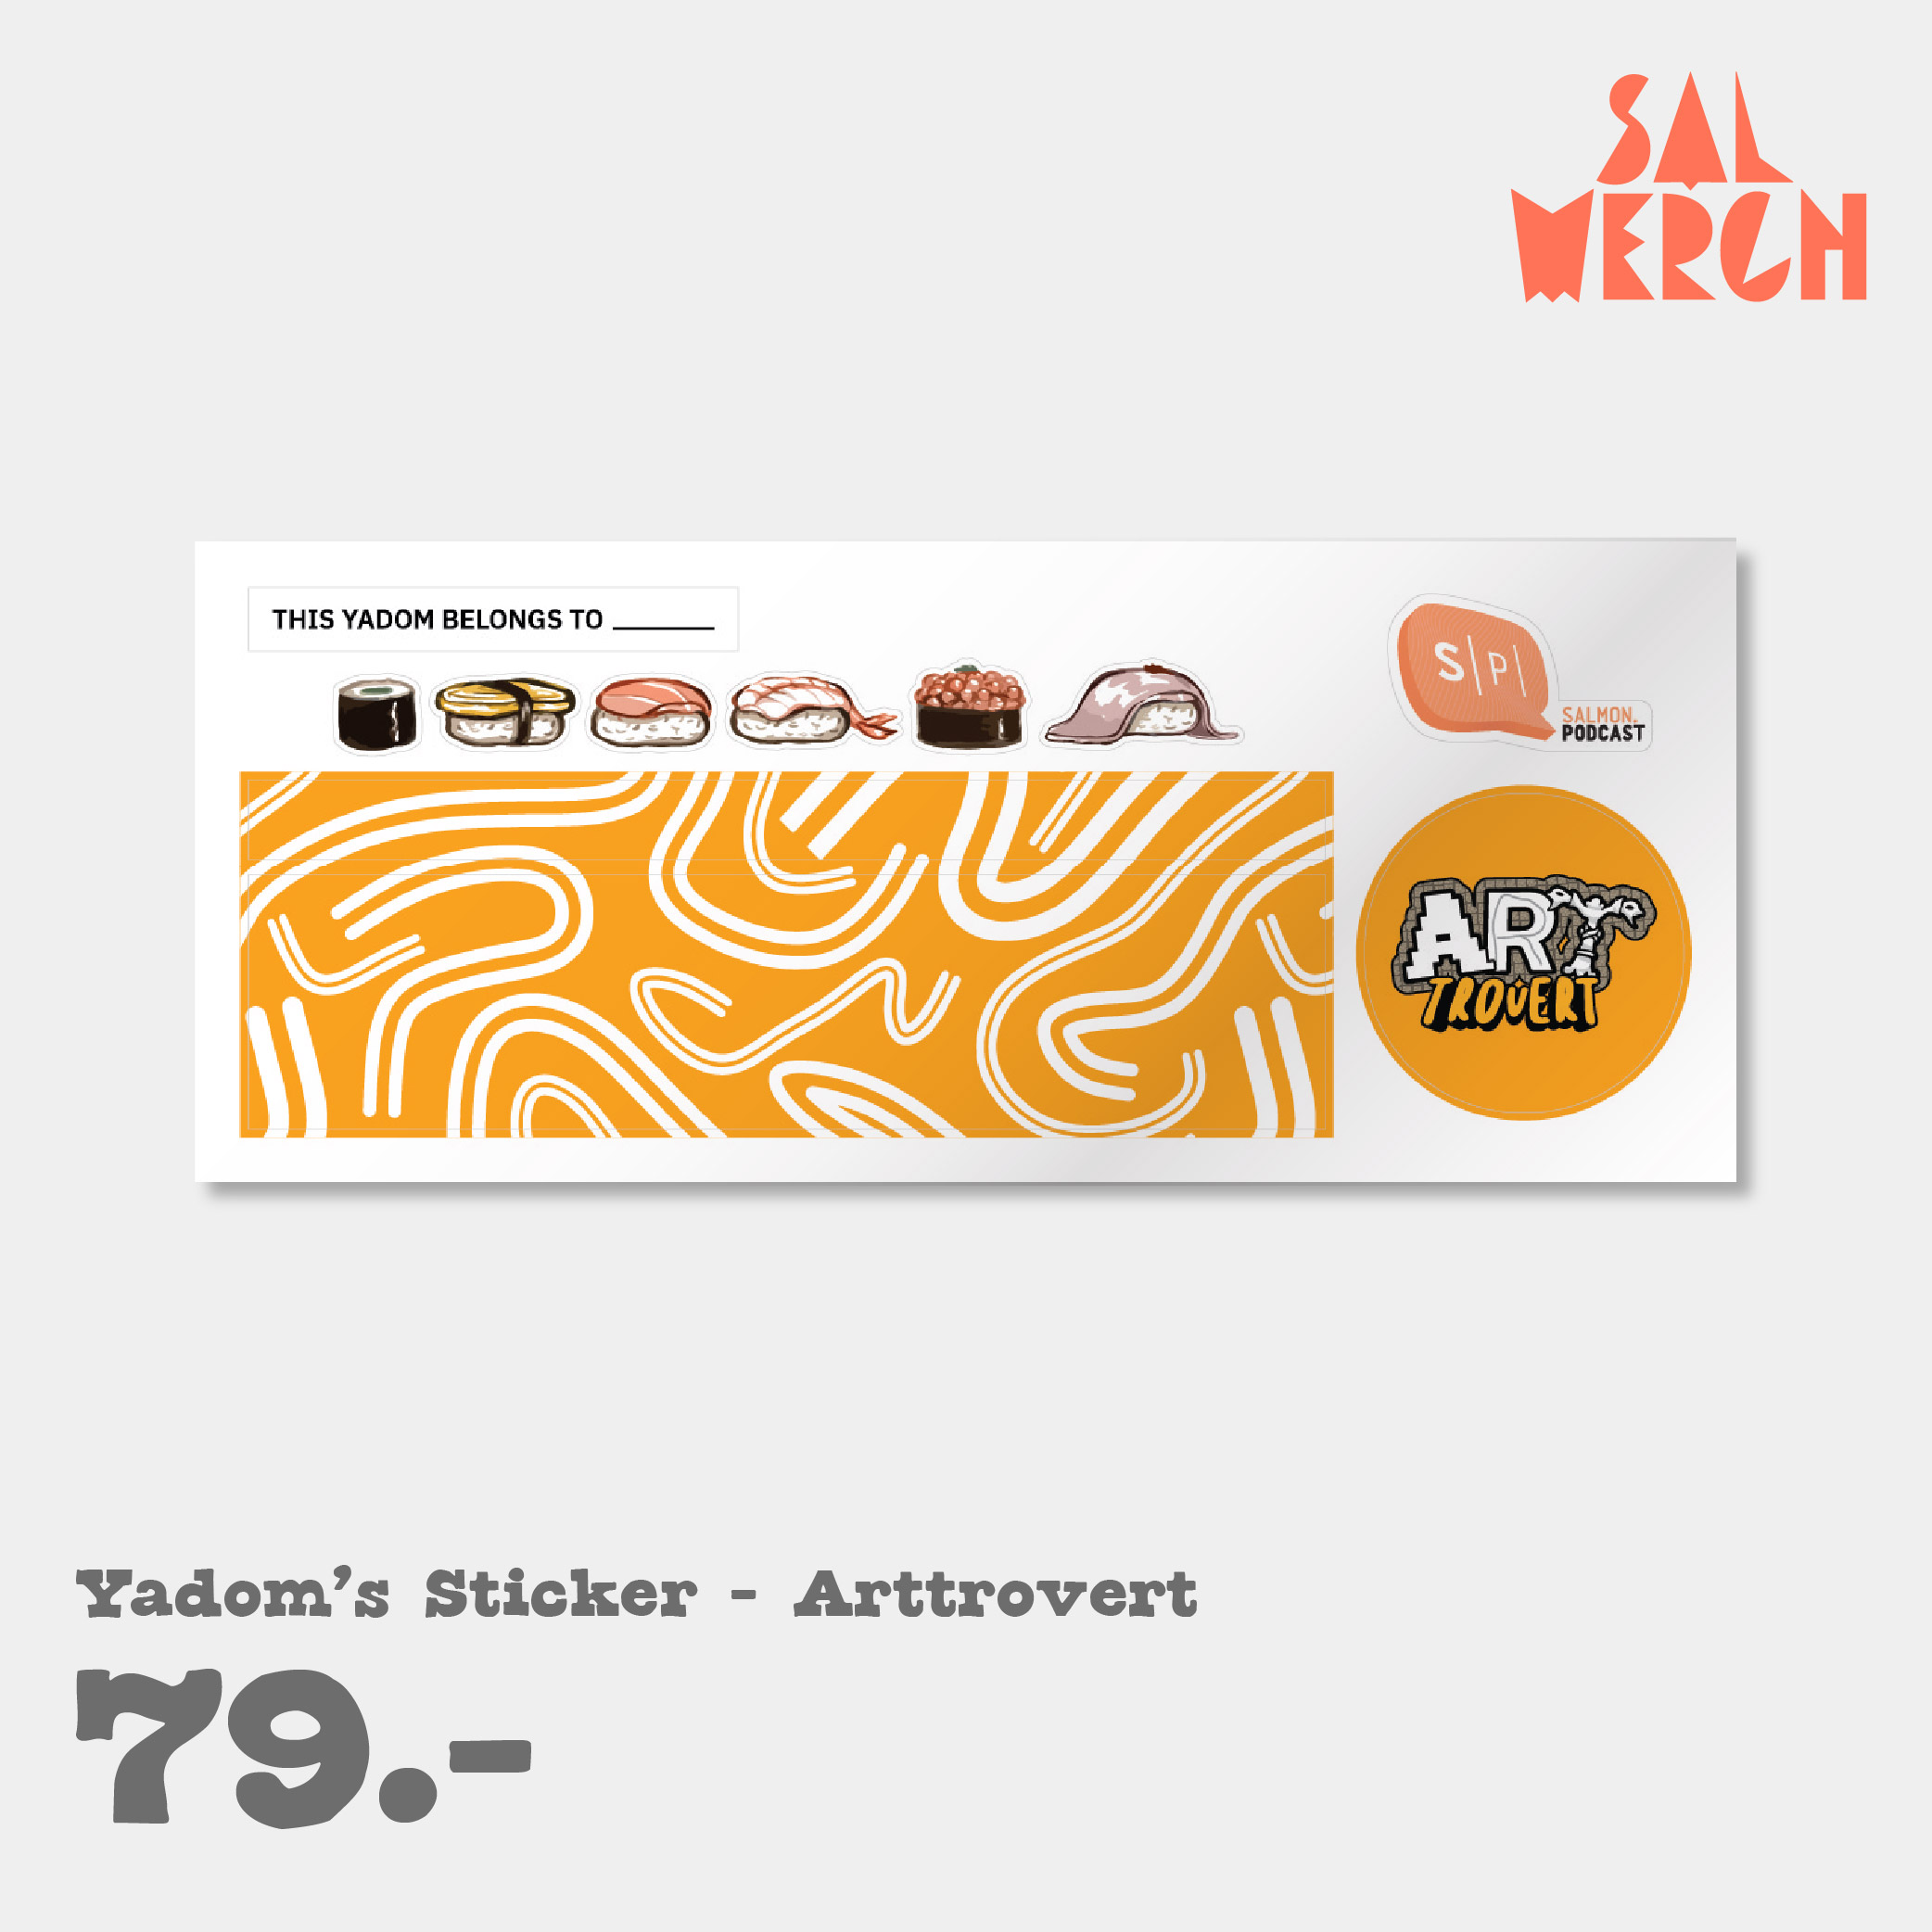 YADOM'S STICKER - ARTTROVERT